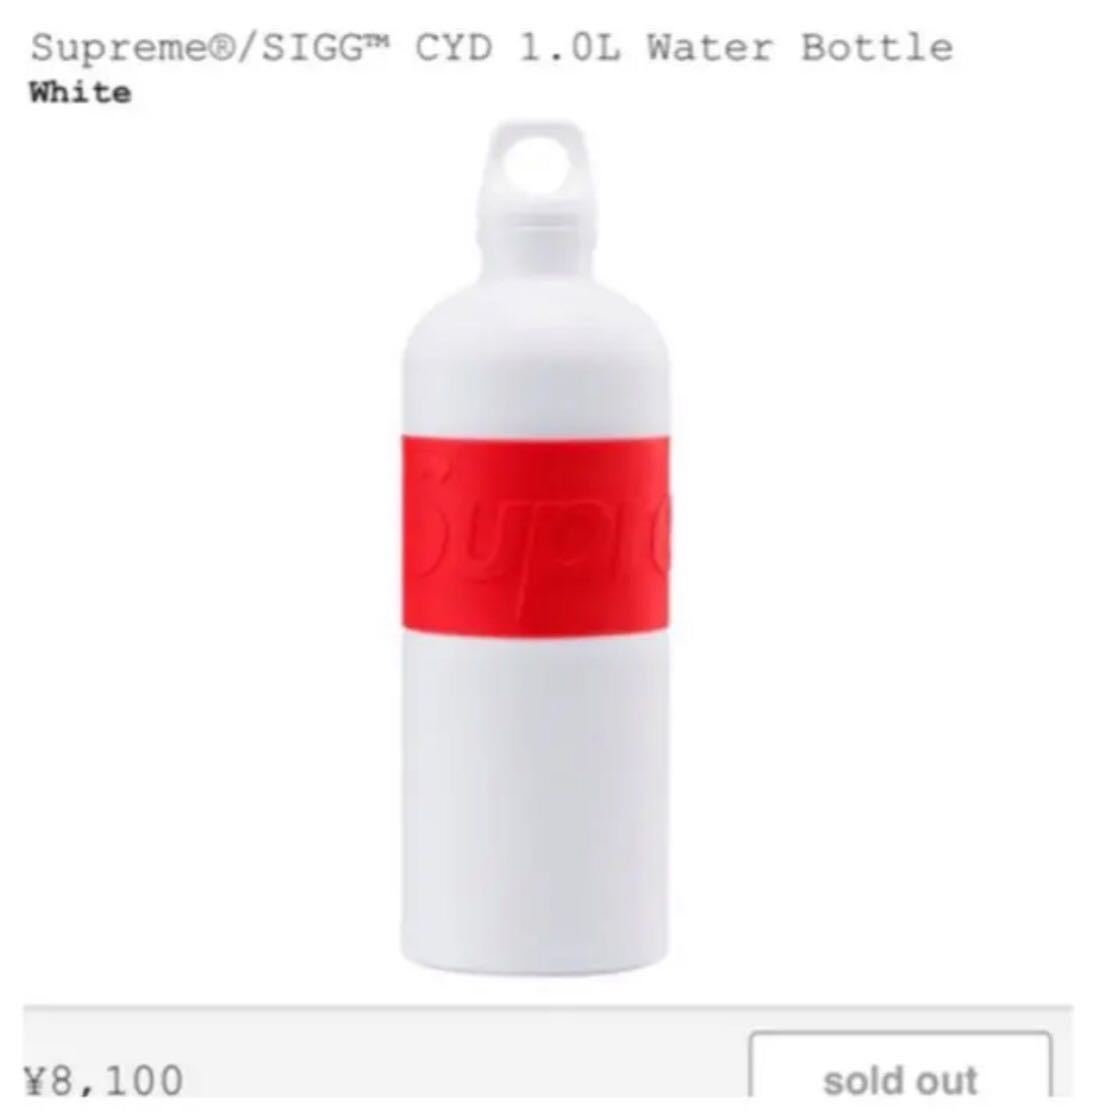 新品未使用 Supreme SIGG CYD 1 Water Bottle WHITE シュプリーム シグ ウォーター ボトル 水筒 ホワイト 白 納品書原本等付属品完備のサムネイル